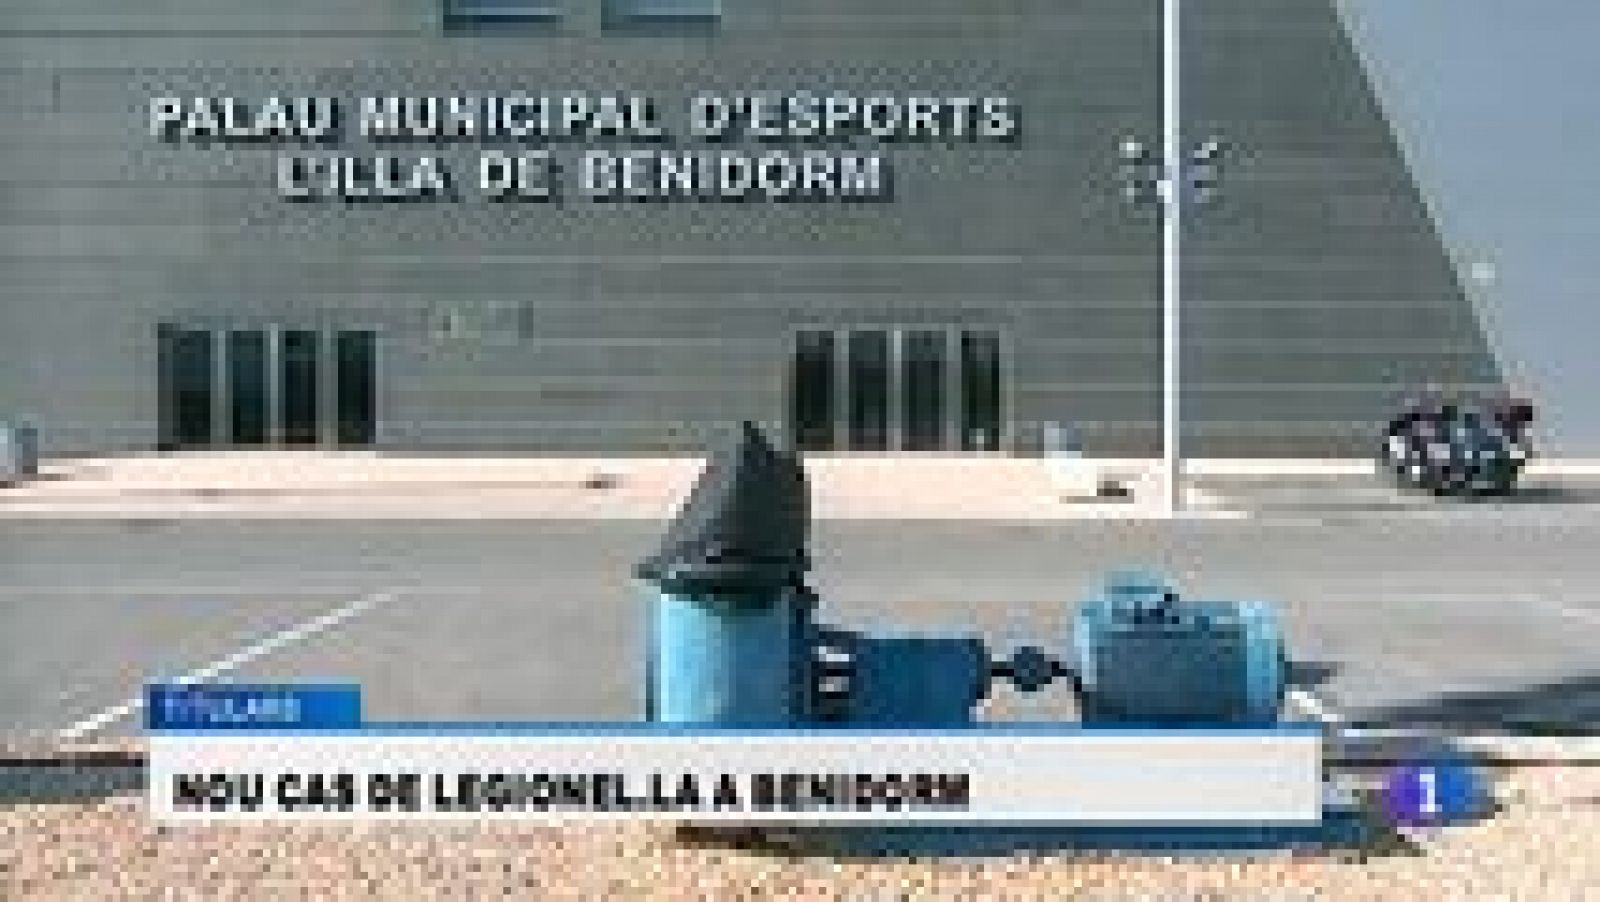 L'informatiu - Comunitat Valenciana: La Comunidad Valenciana en 2' - 13/03/15 | RTVE Play